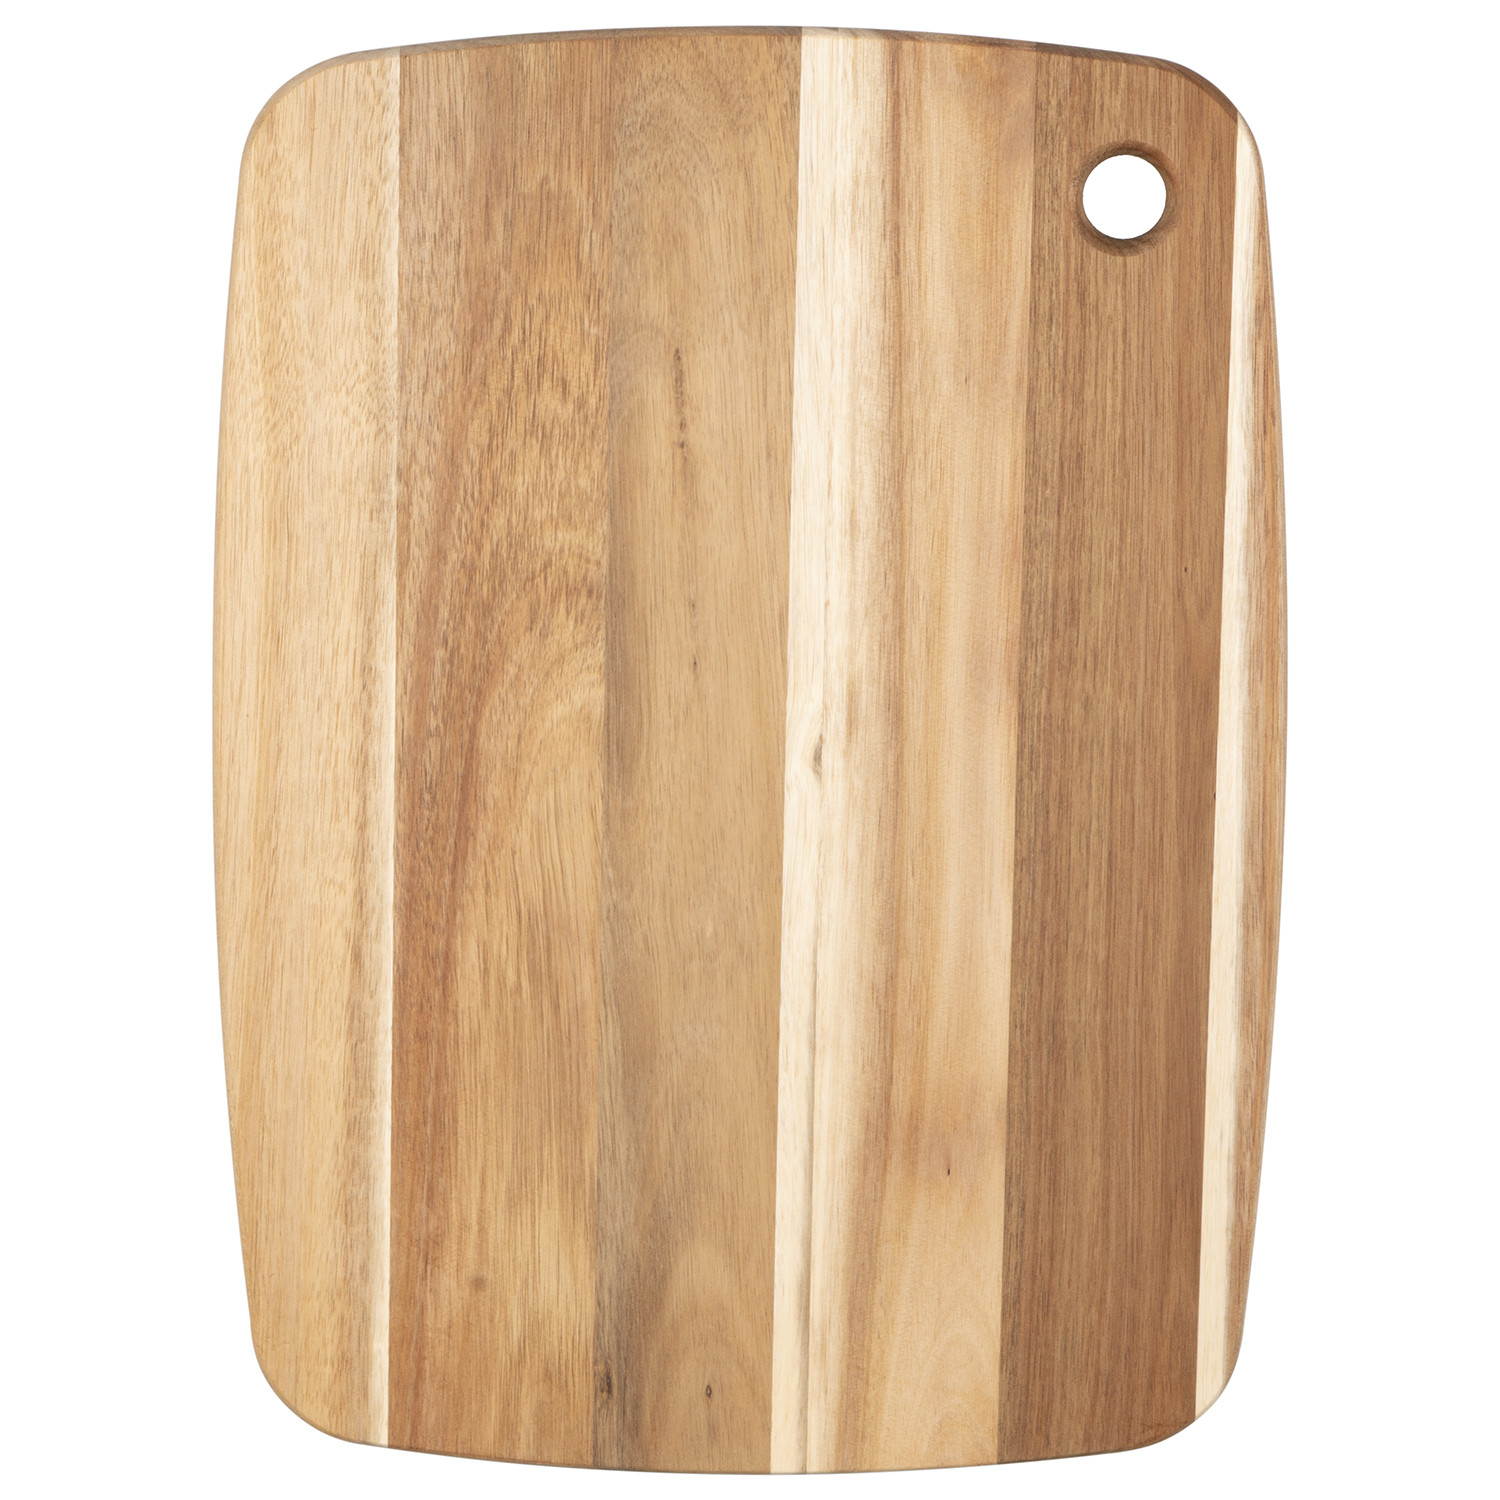 Acacia Wood Large Chopping Board Image 1